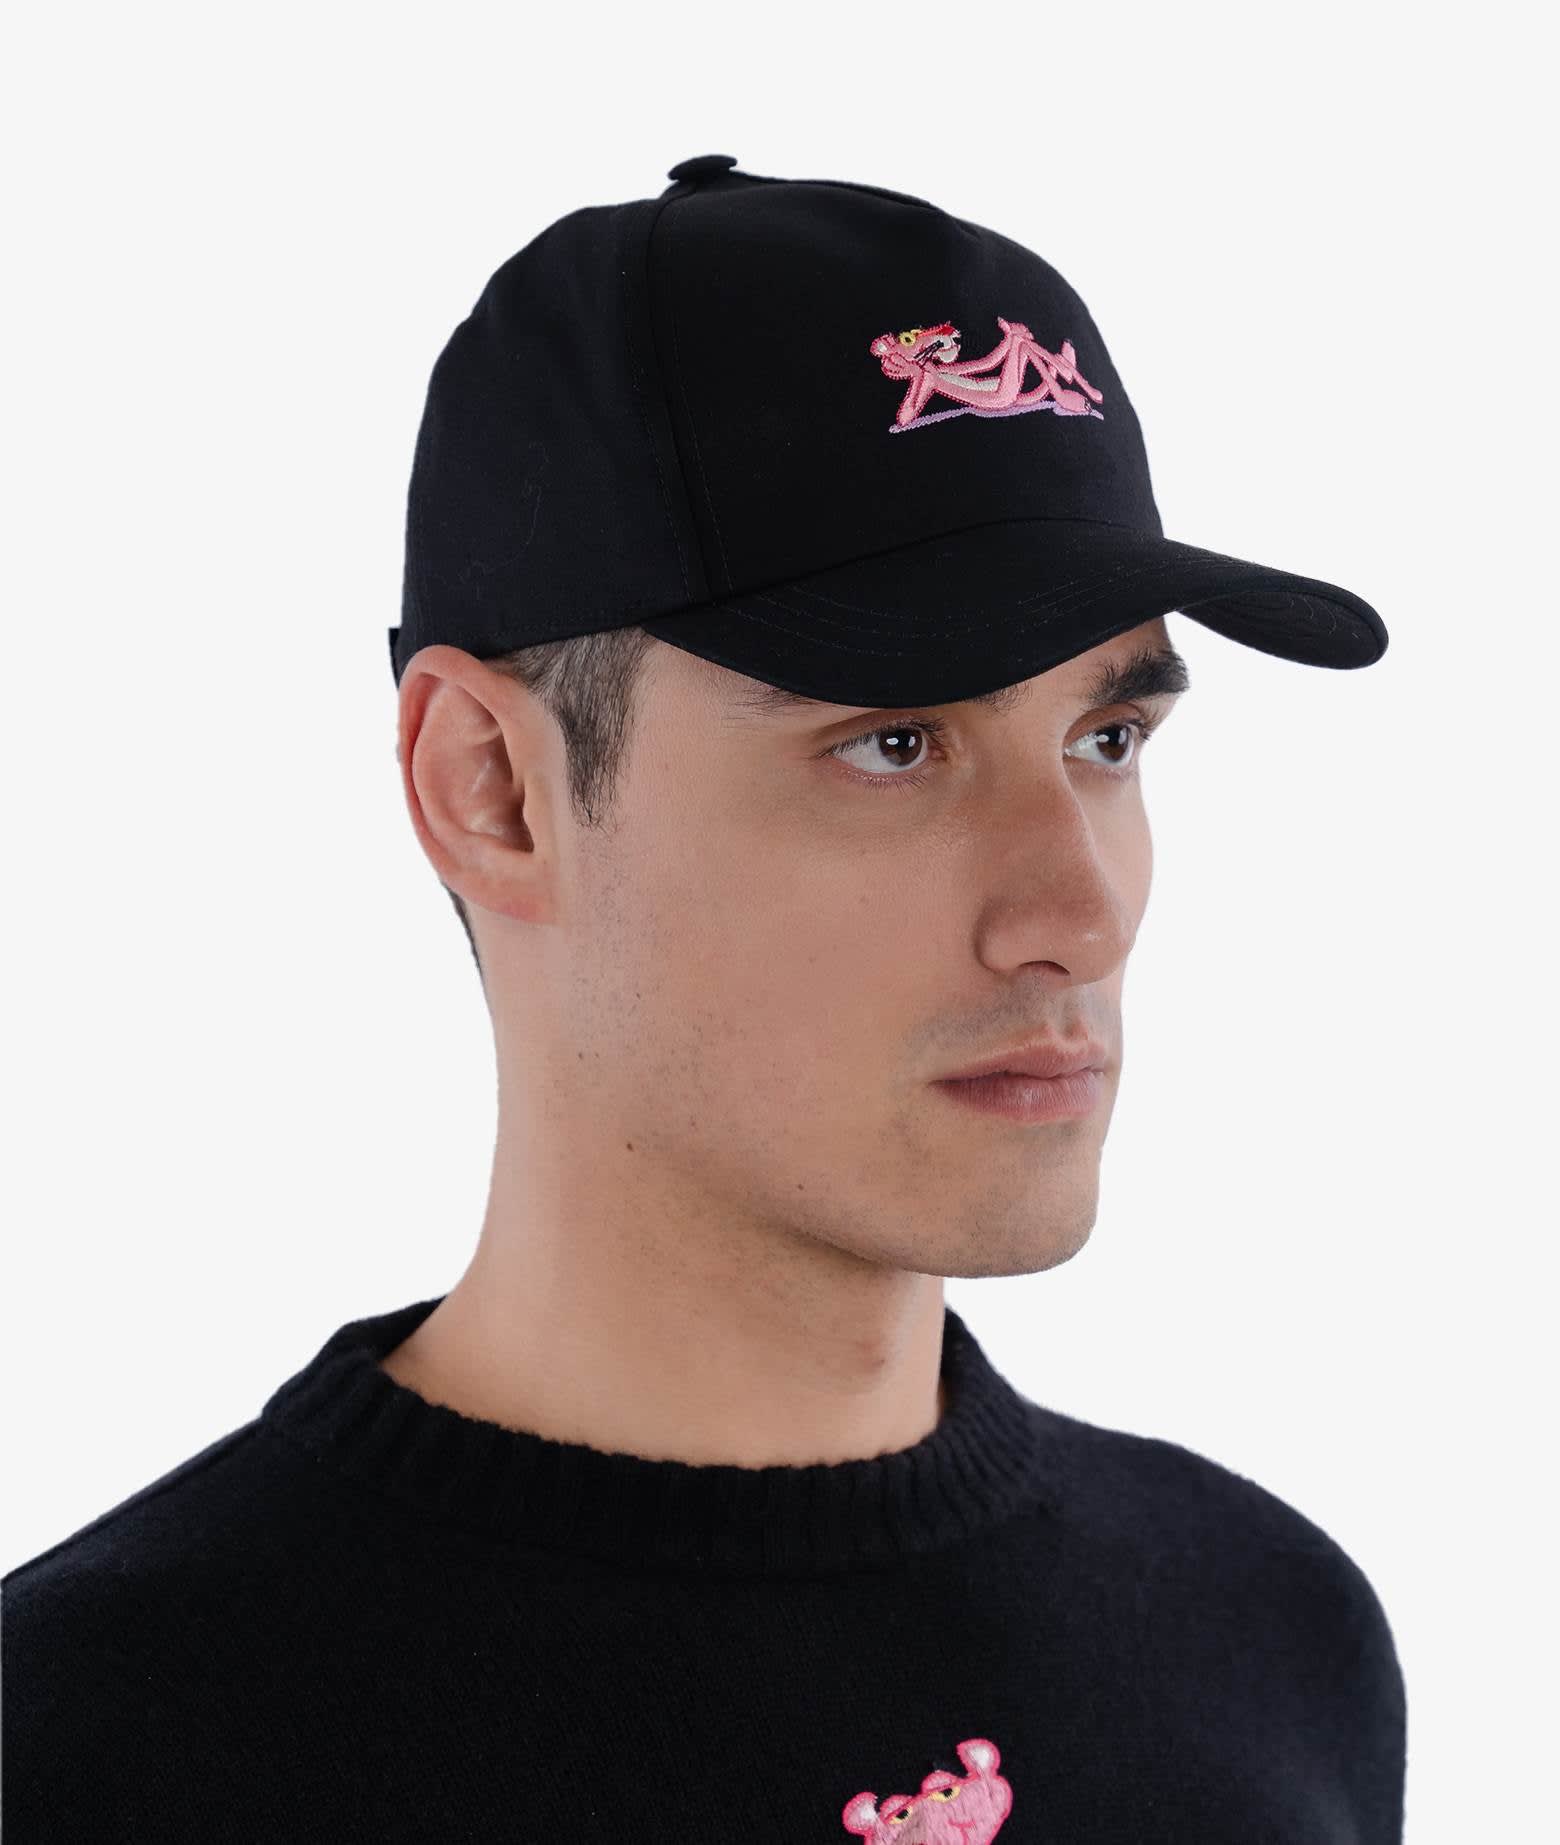 Shop Larusmiani Baseball Cap Pink Panther Hat In Black